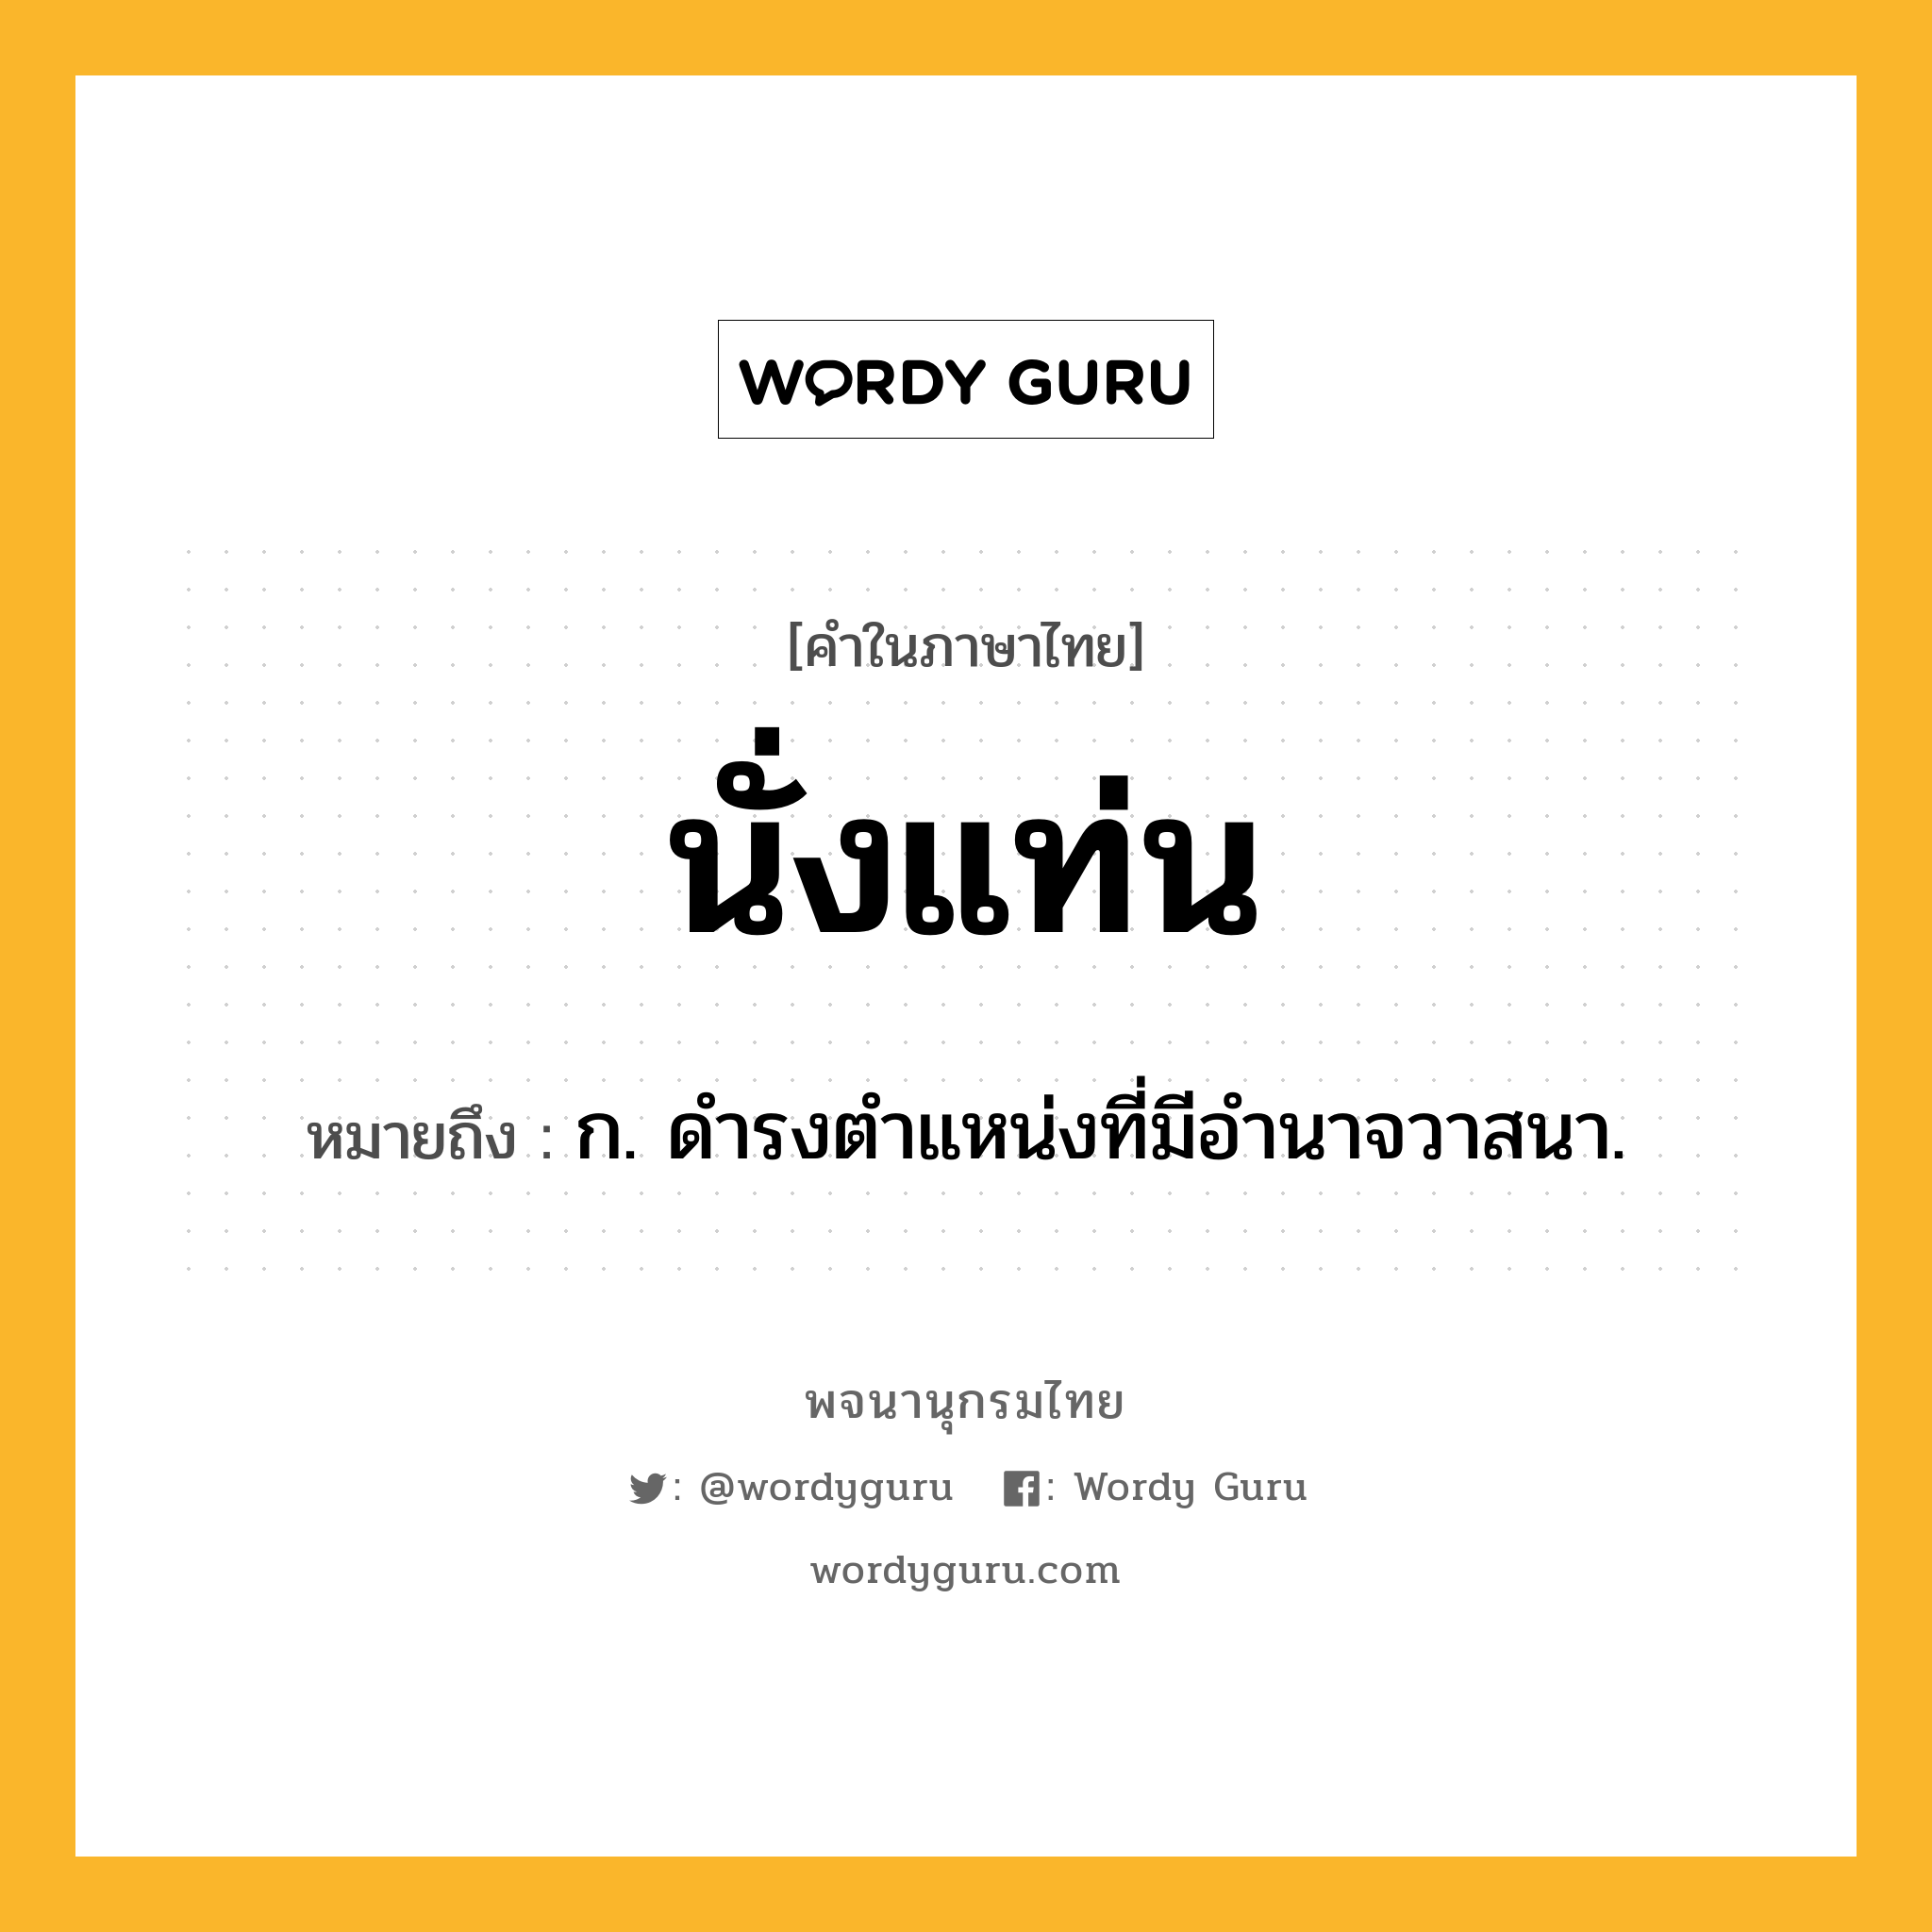 นั่งแท่น ความหมาย หมายถึงอะไร?, คำในภาษาไทย นั่งแท่น หมายถึง ก. ดำรงตำแหน่งที่มีอำนาจวาสนา.